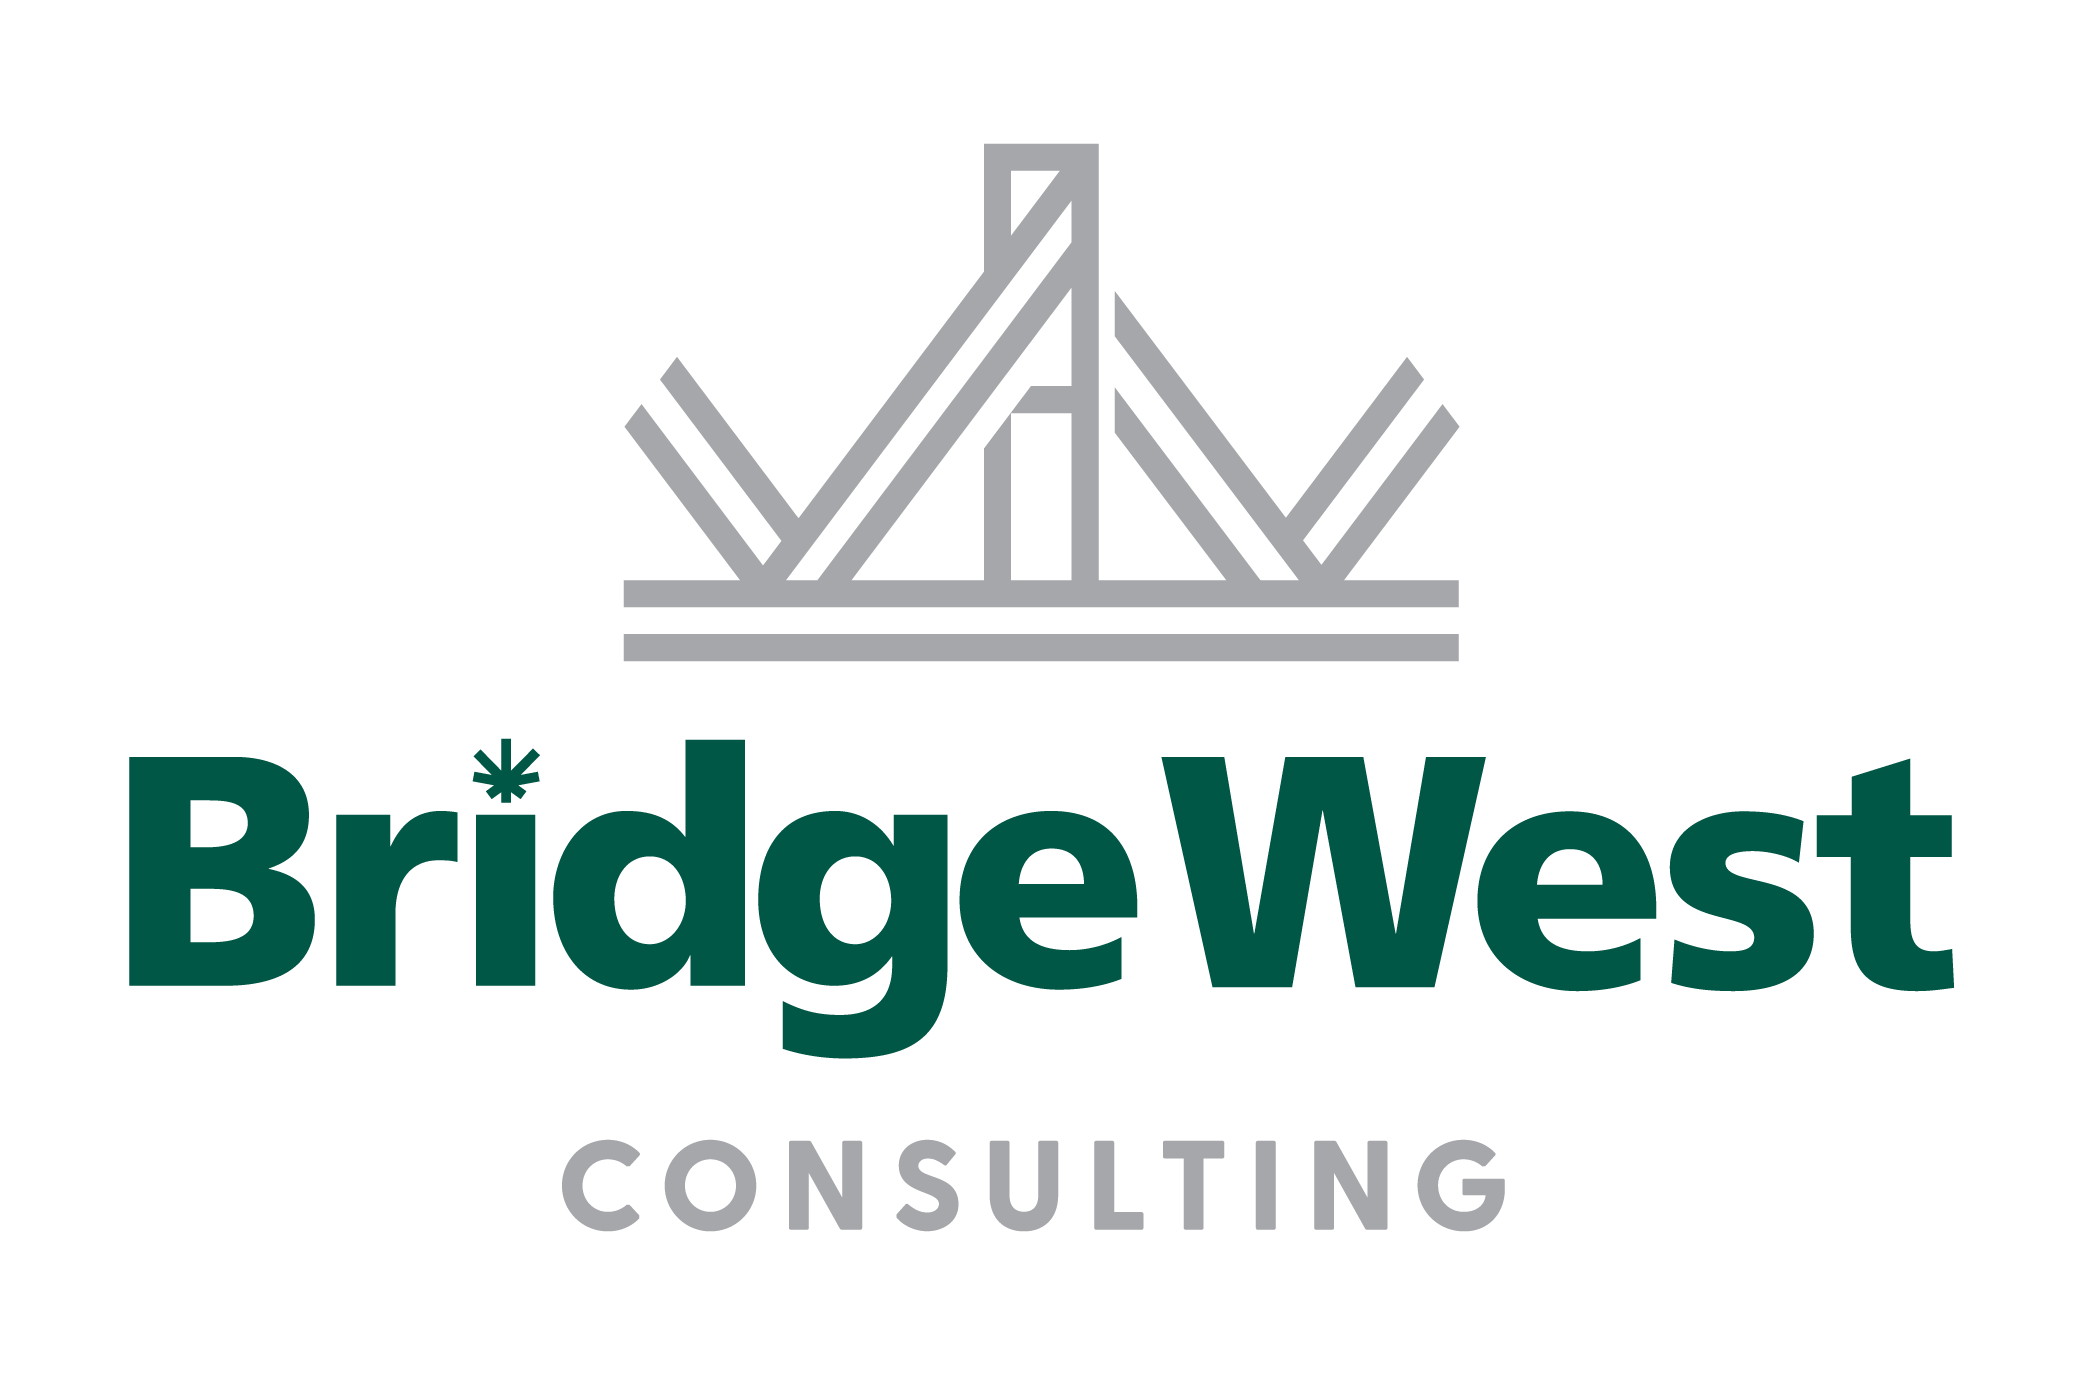 Bridge West Consulting